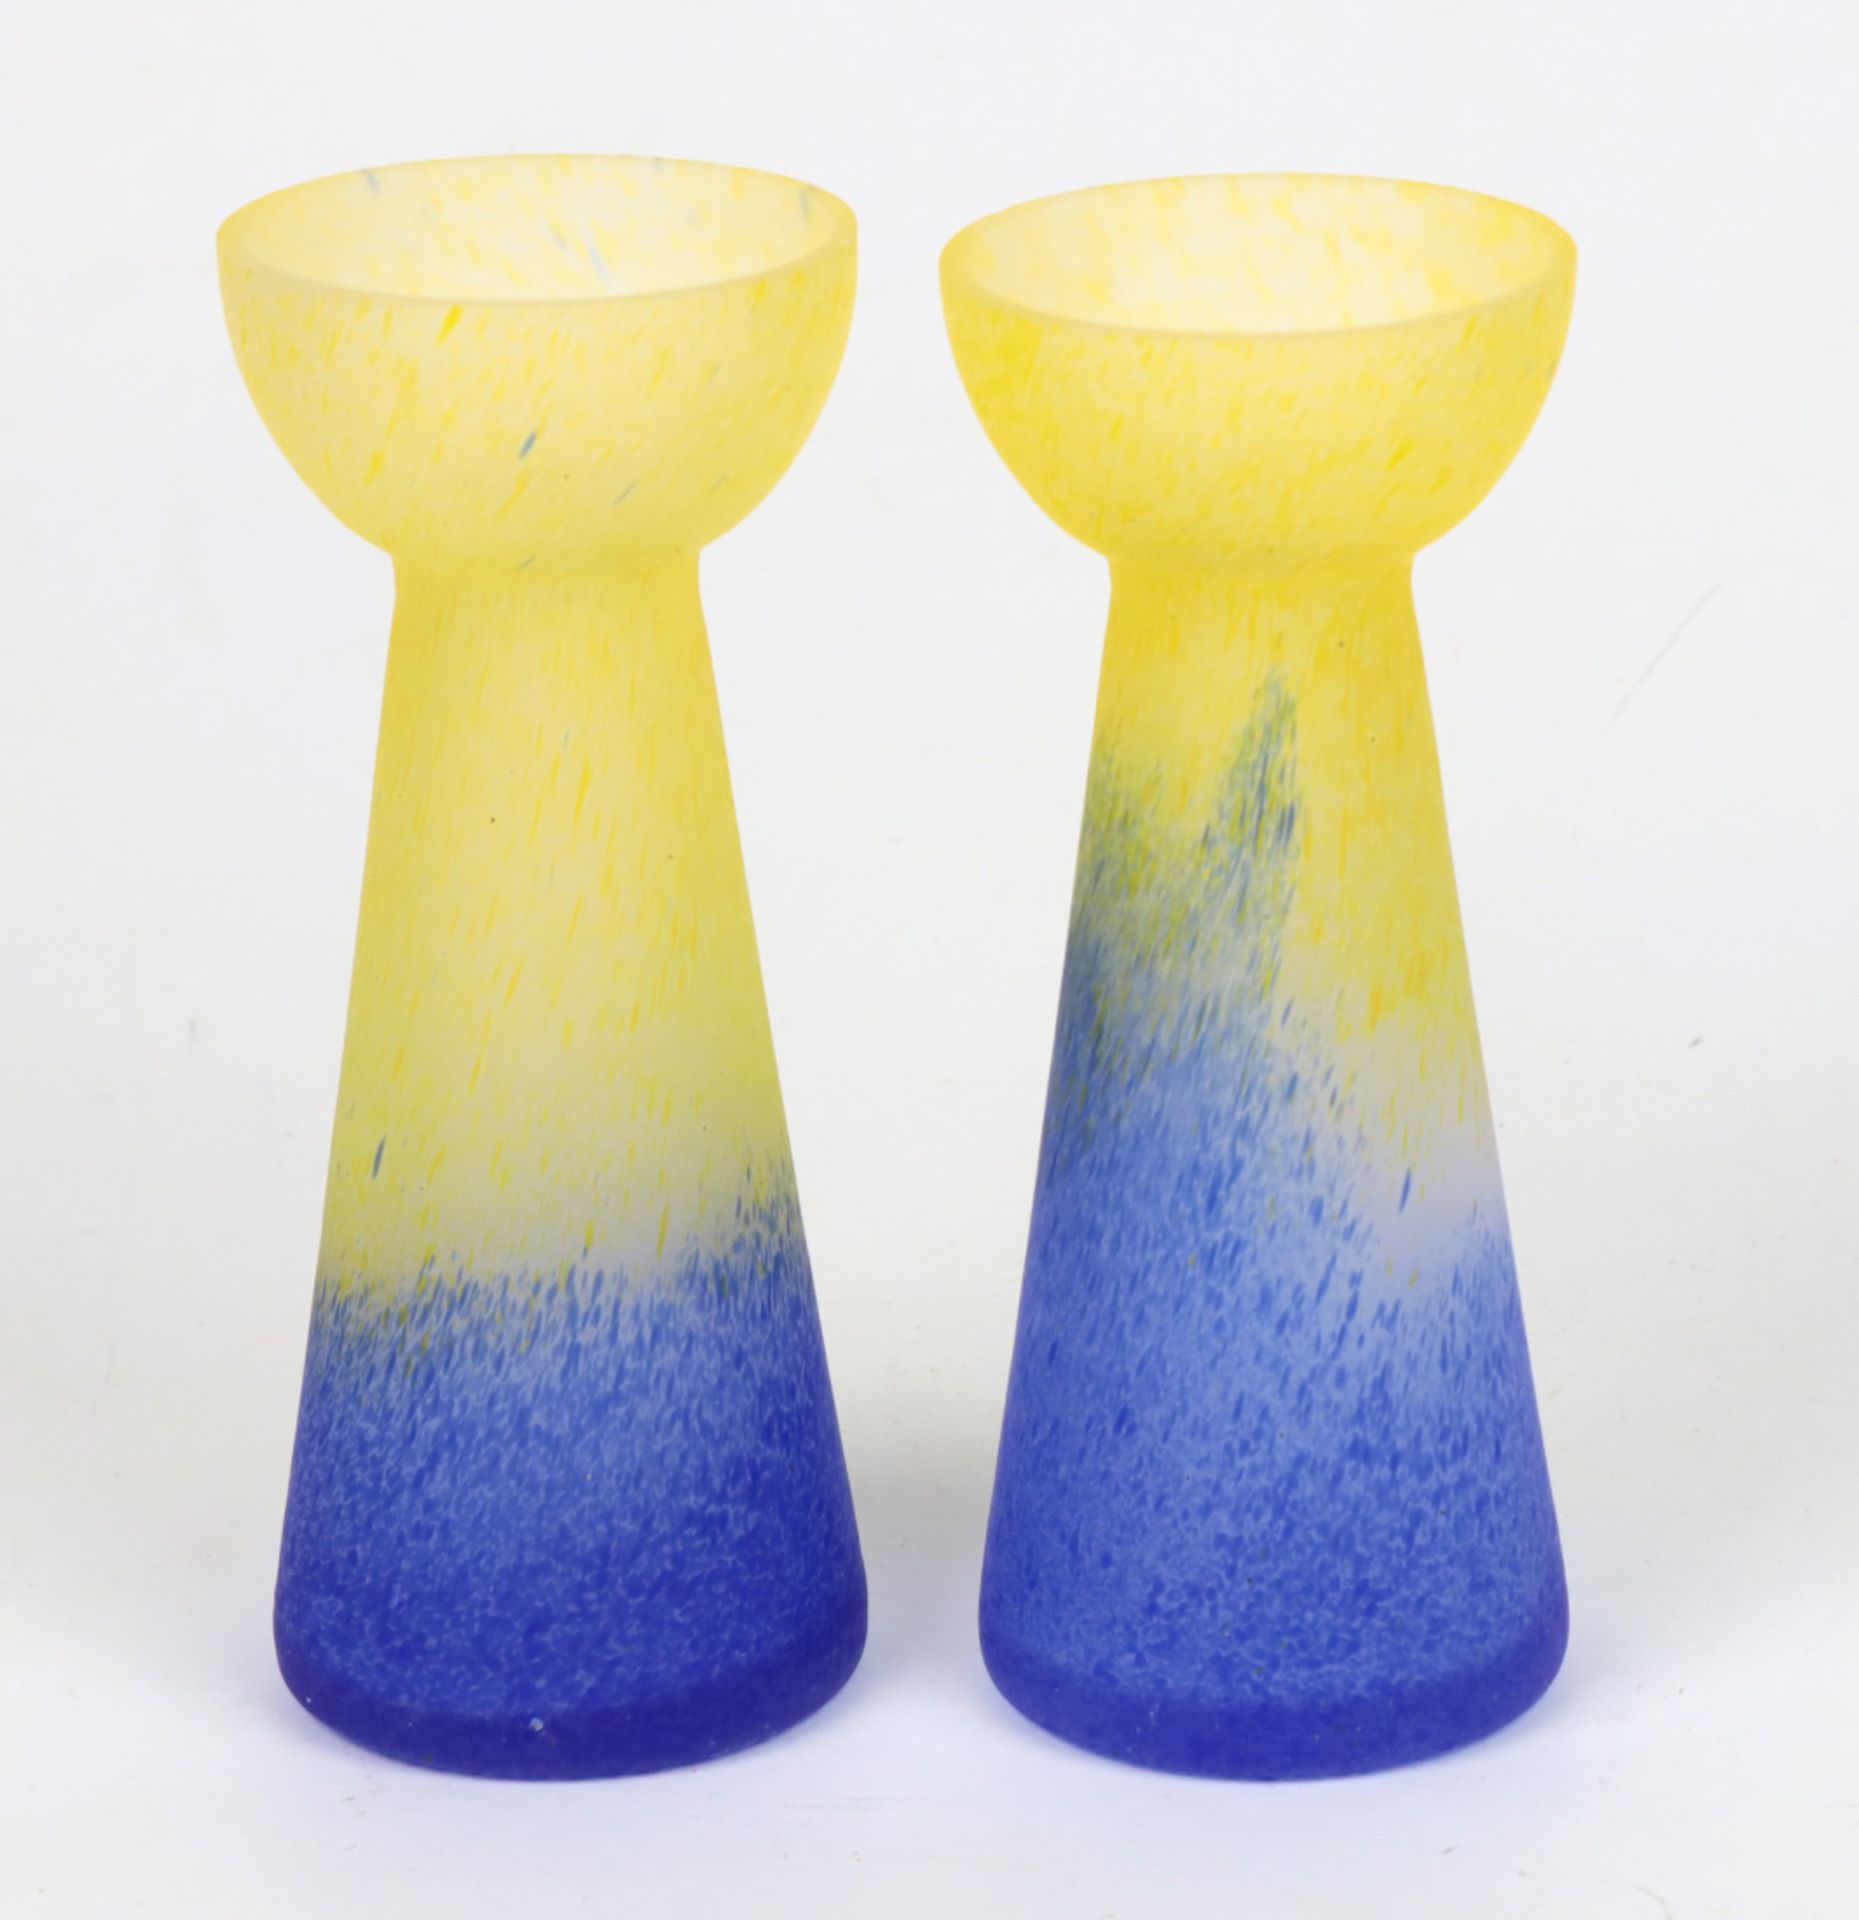 Jugendstil Vasenpaar Glas in die Form geblasen mit gelben und blauen Farb-Einpuderunge